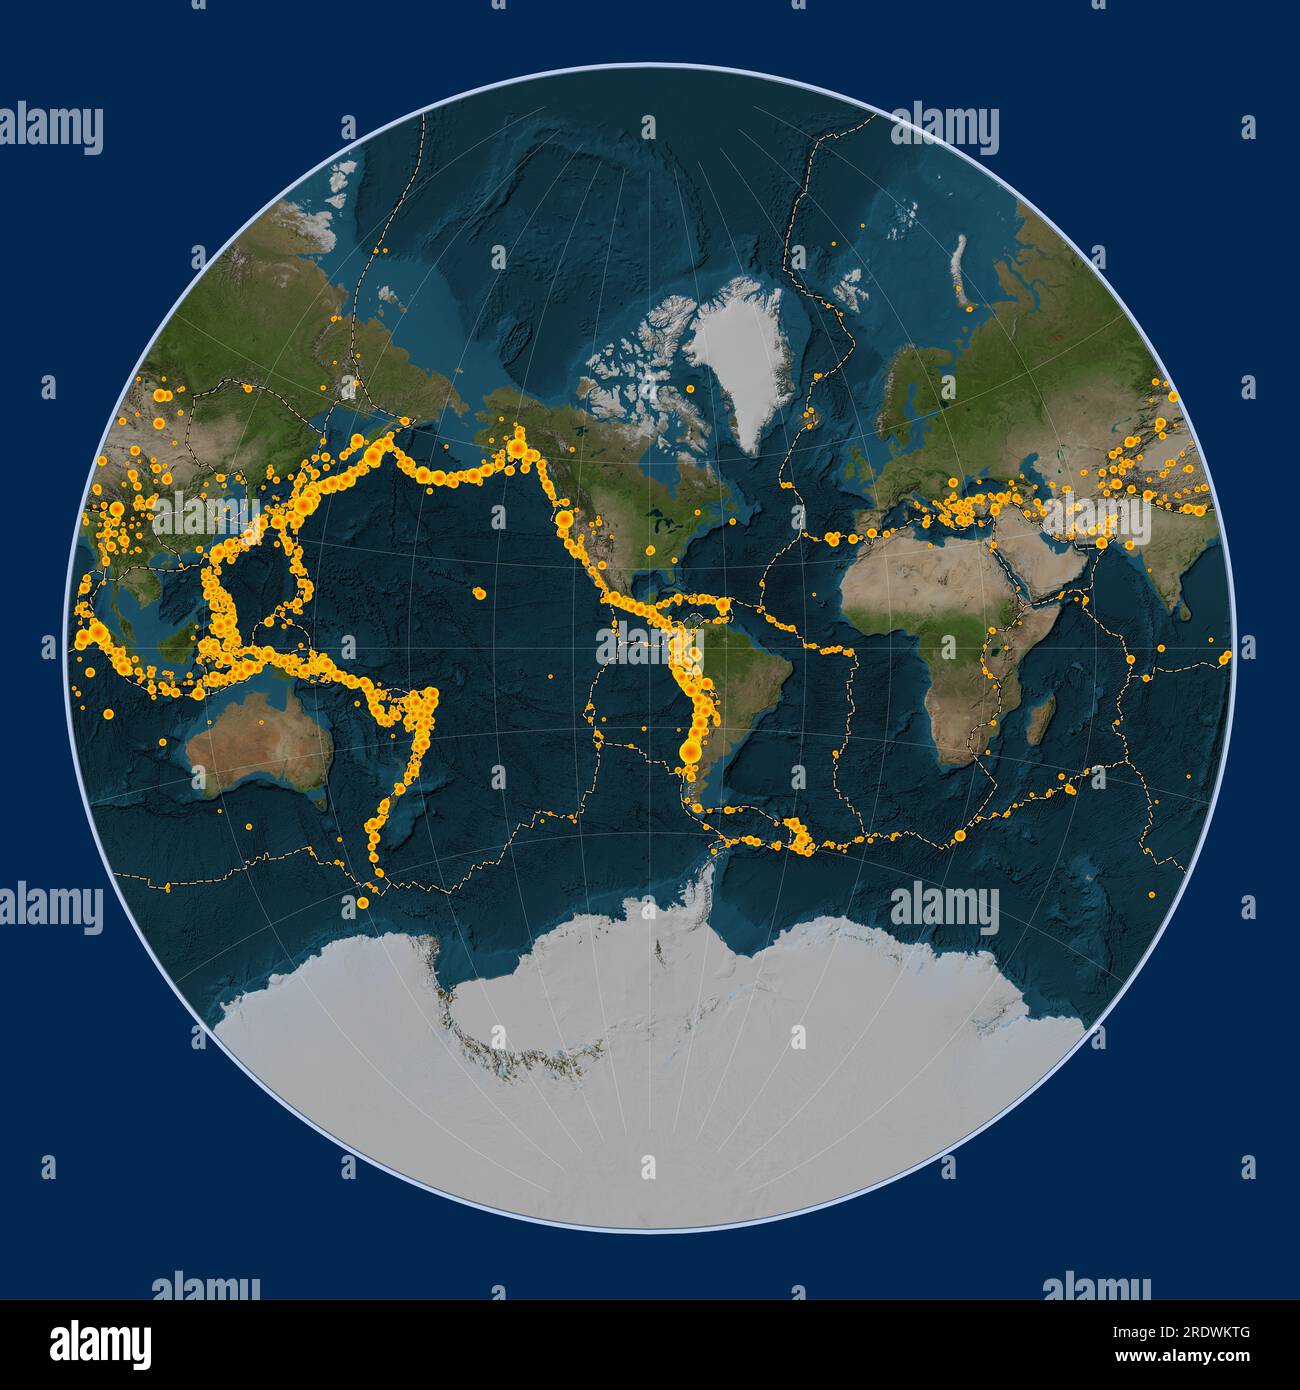 Emplacements des tremblements de terre au-dessus de Richter 6,5 enregistrés depuis le début du 17e siècle sur la carte satellite mondiale en marbre bleu dans le cen de projection de Lagrange Banque D'Images